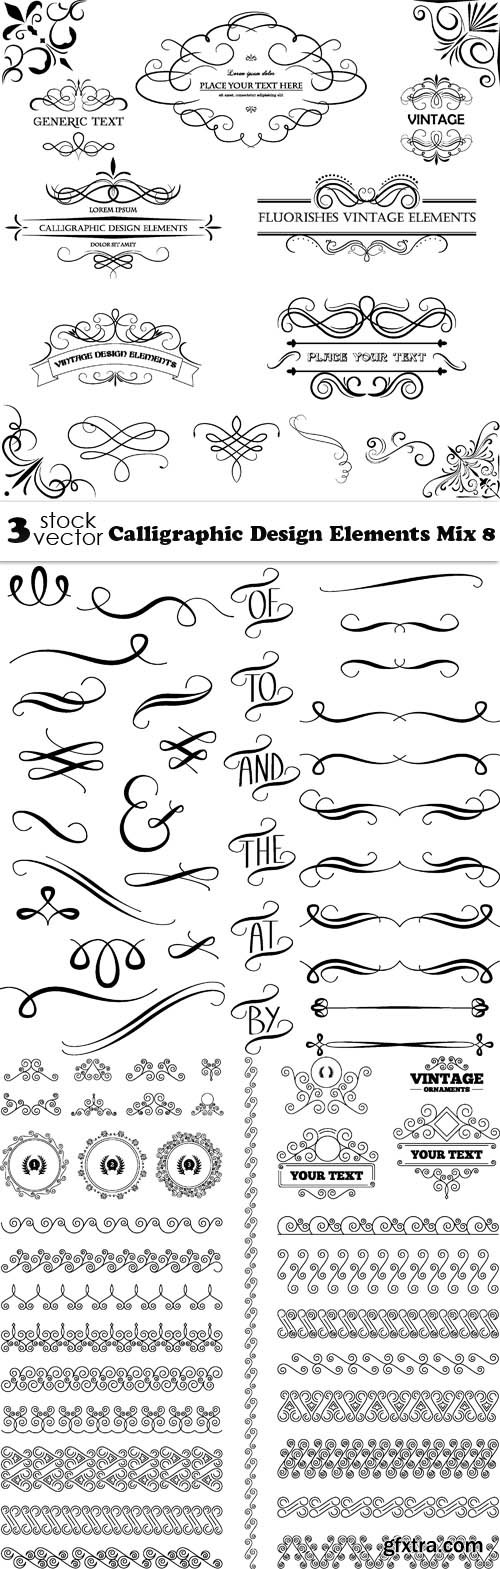 Vectors - Calligraphic Design Elements Mix 8